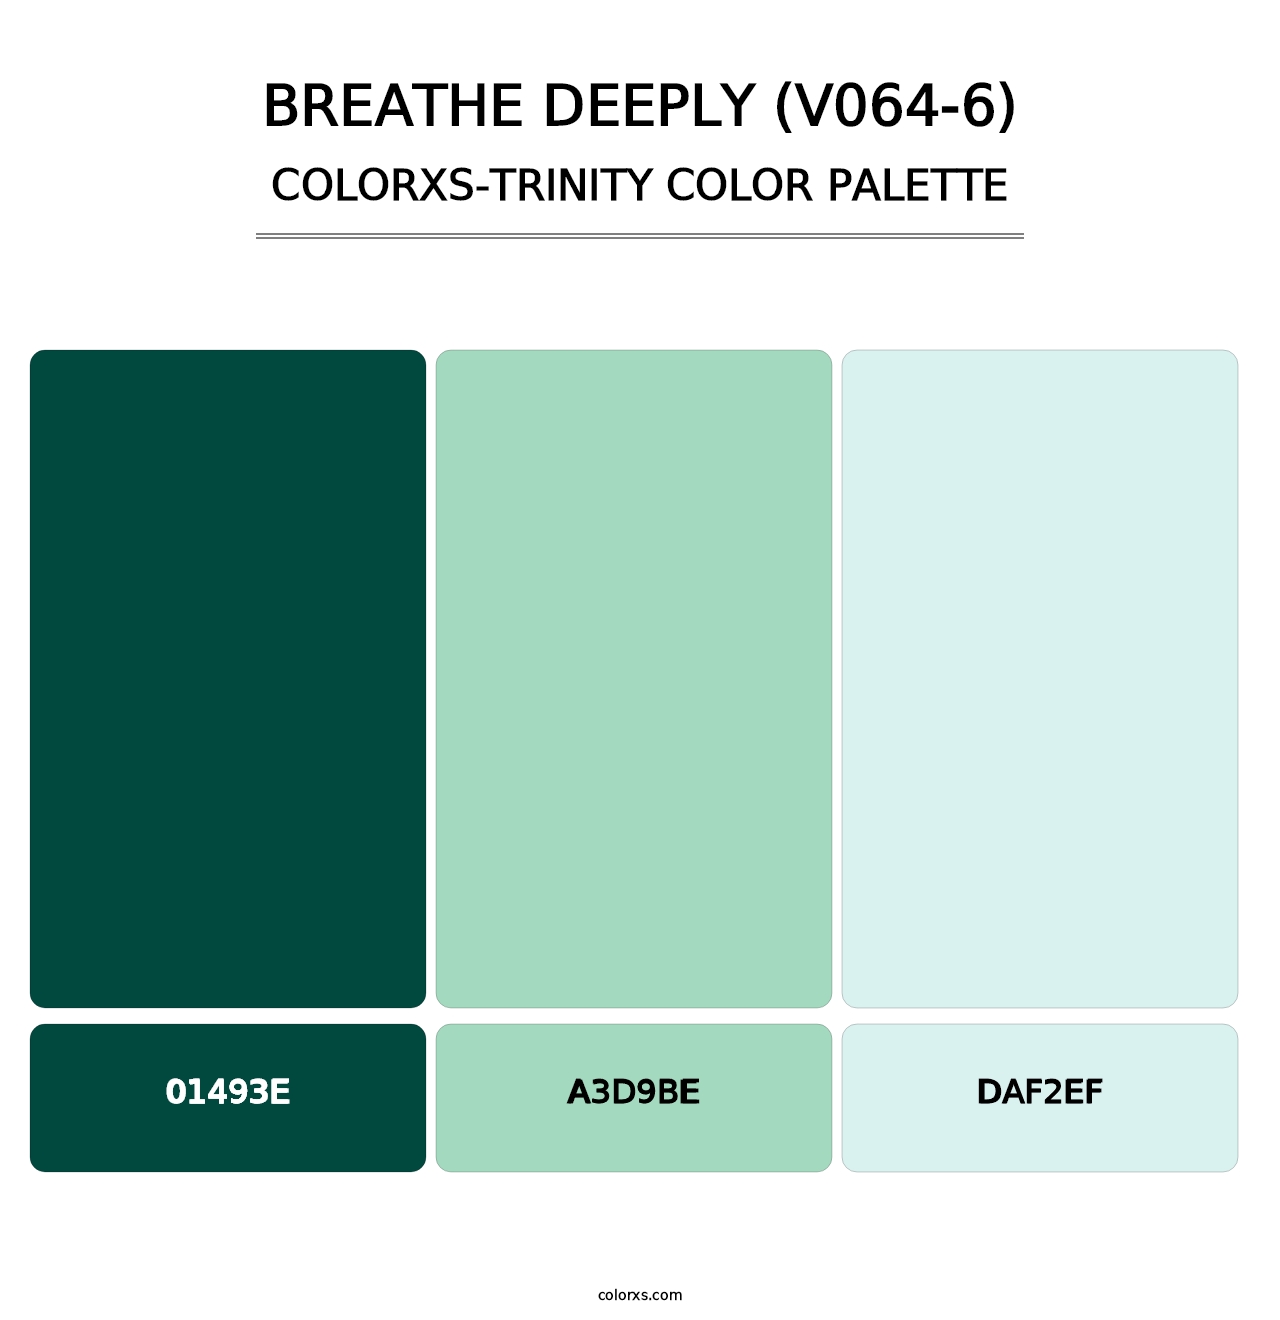 Breathe Deeply (V064-6) - Colorxs Trinity Palette